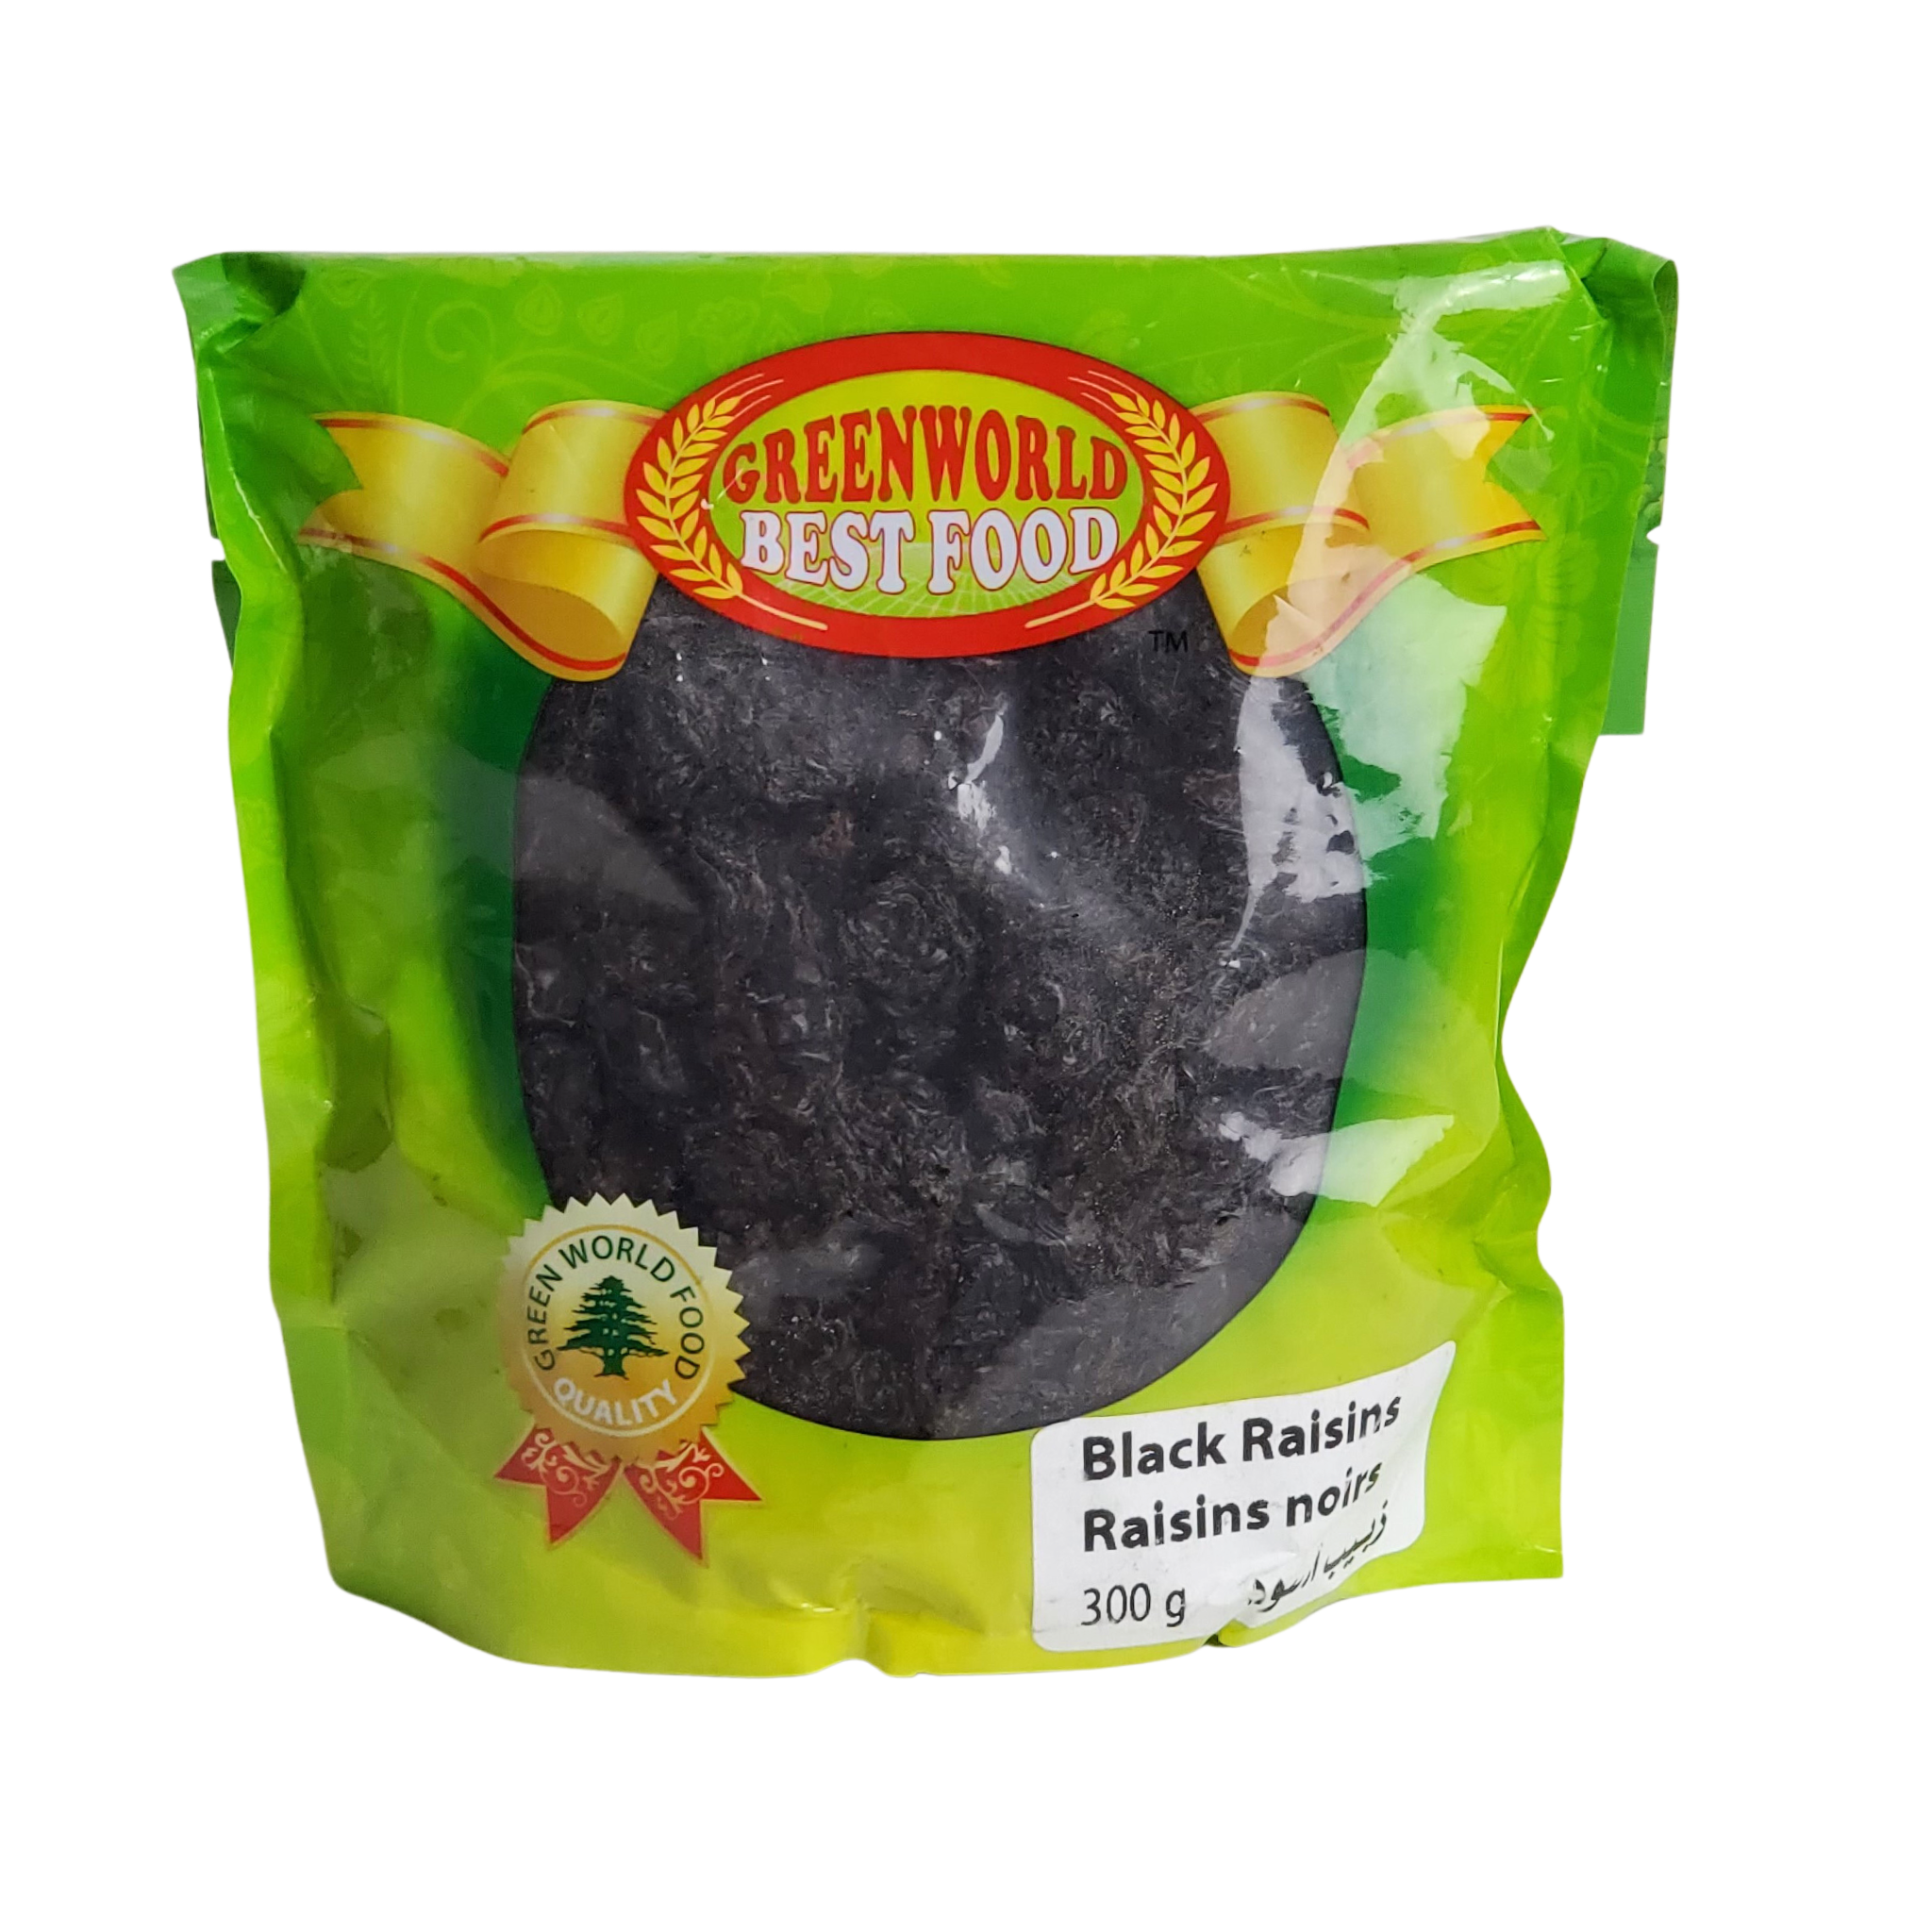 Greenworld Best Food Black Raisins